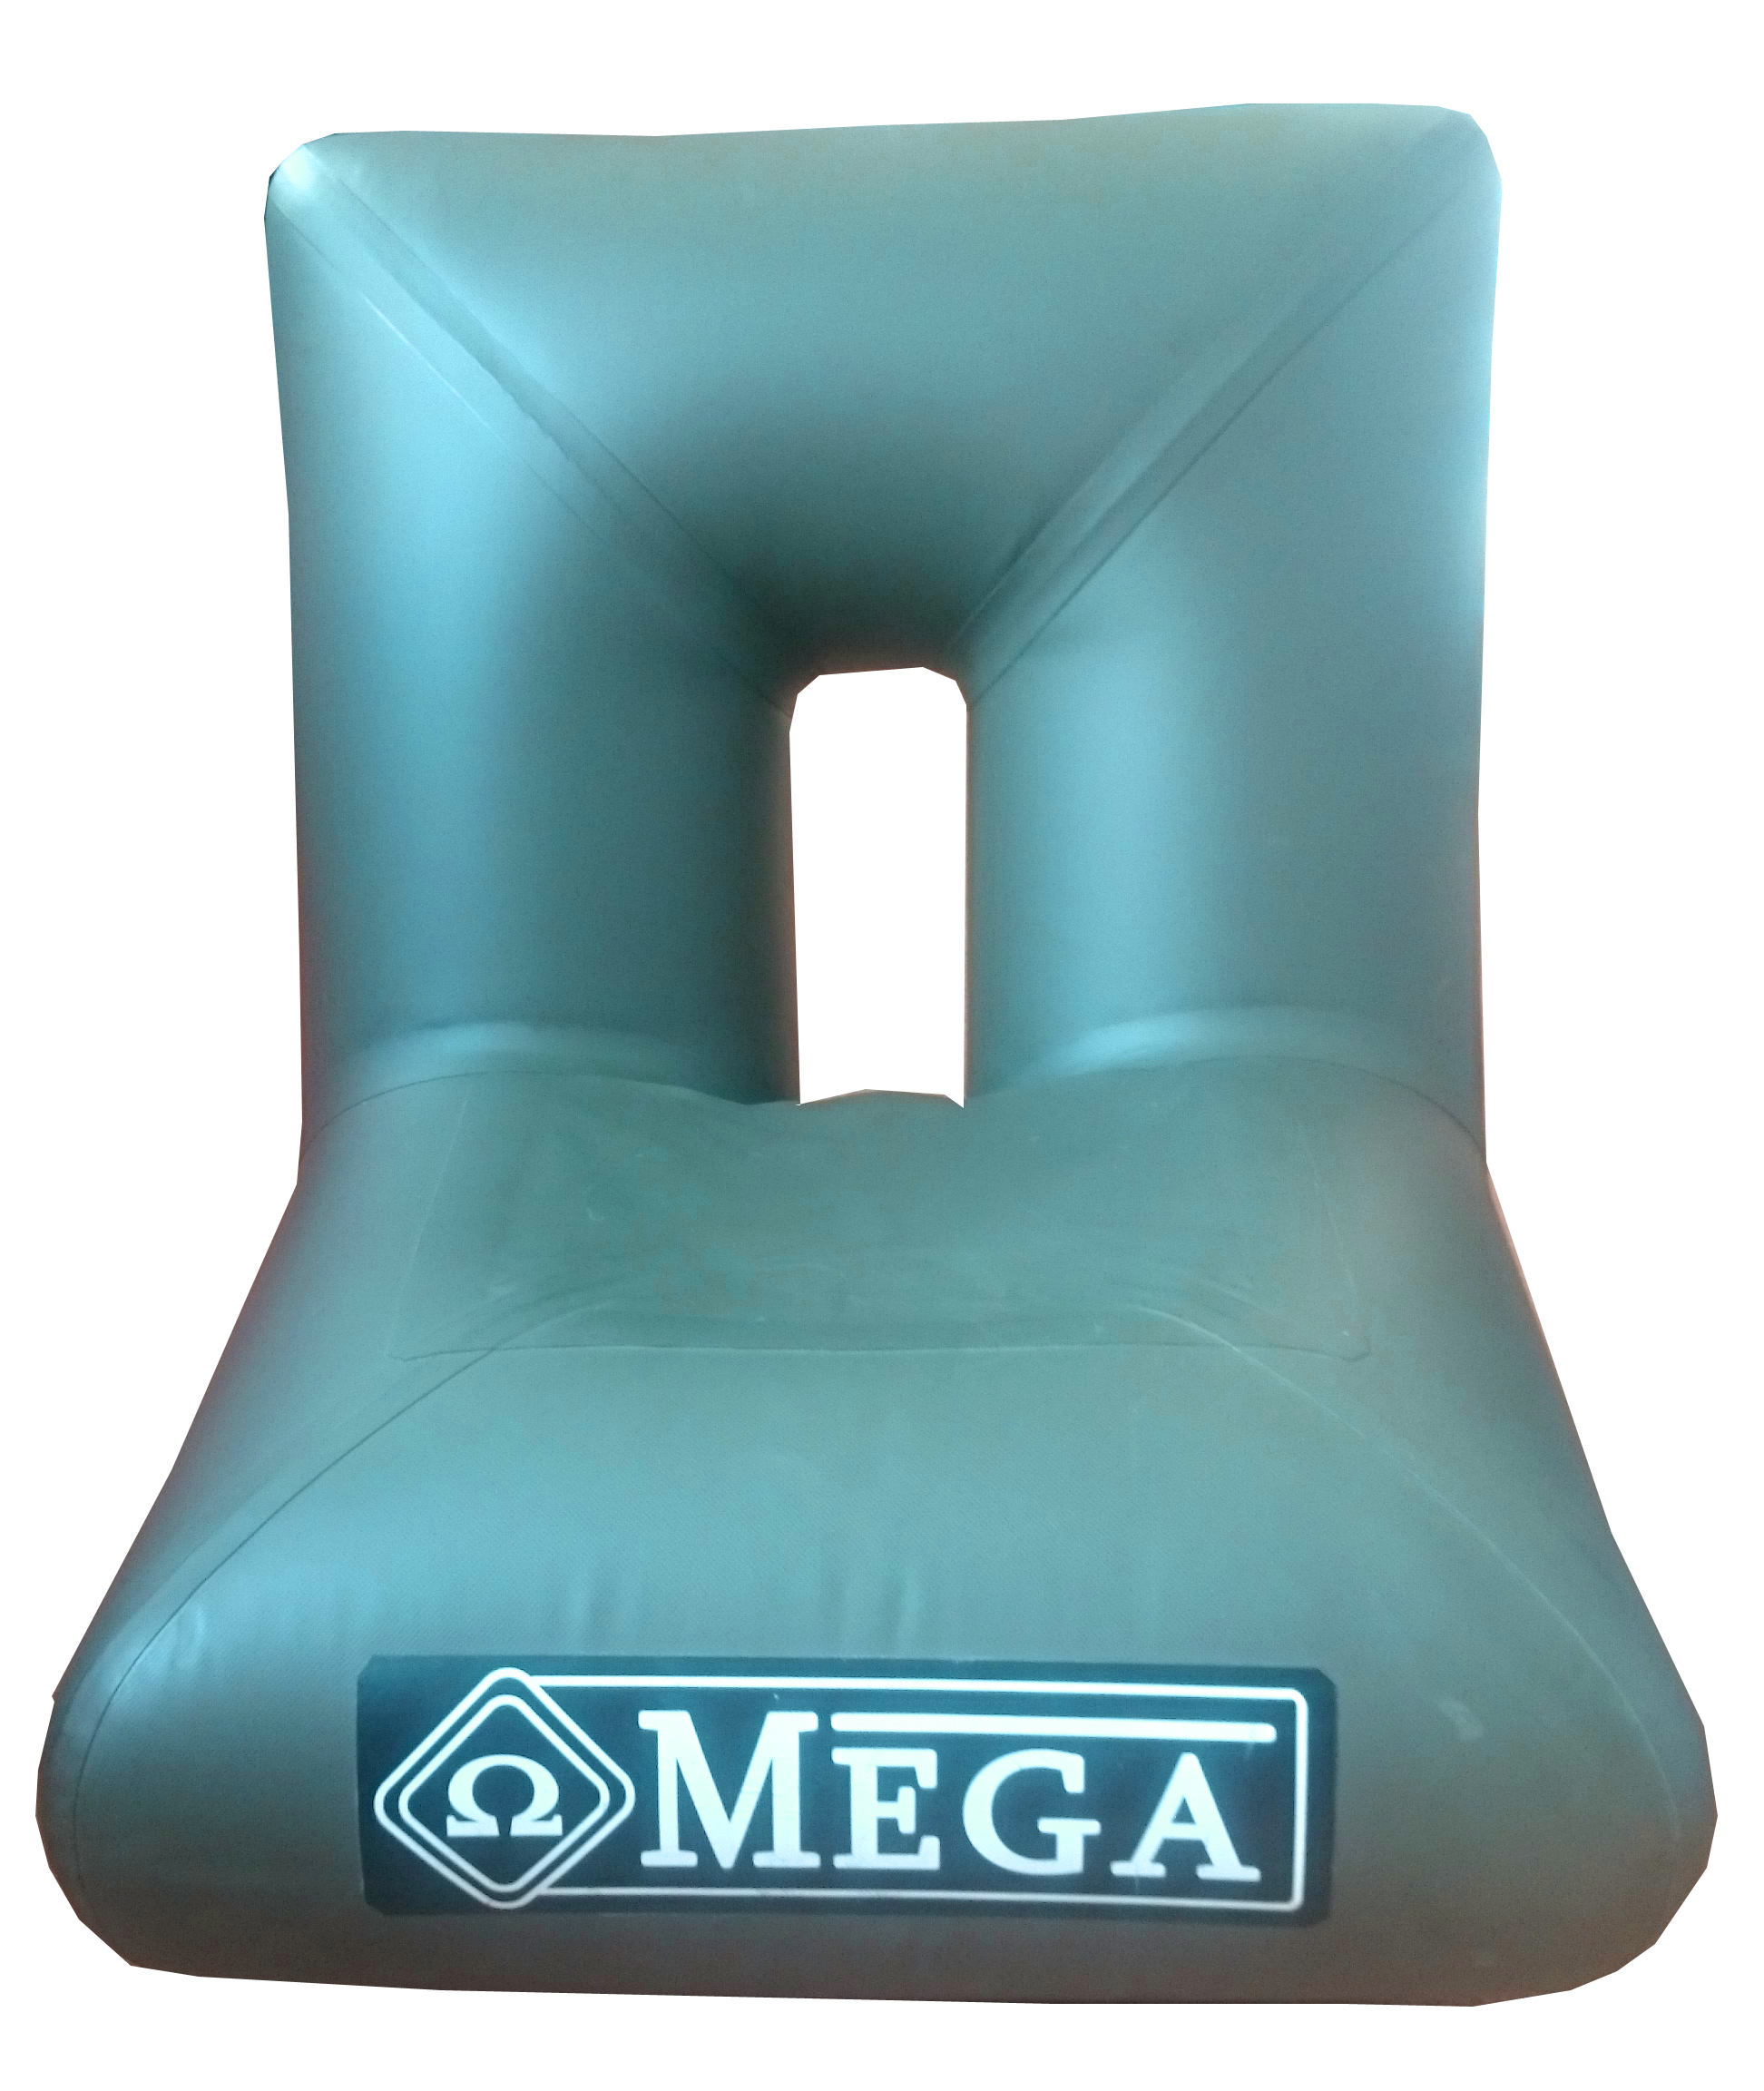 Pripučiama kėdė Omega didelė